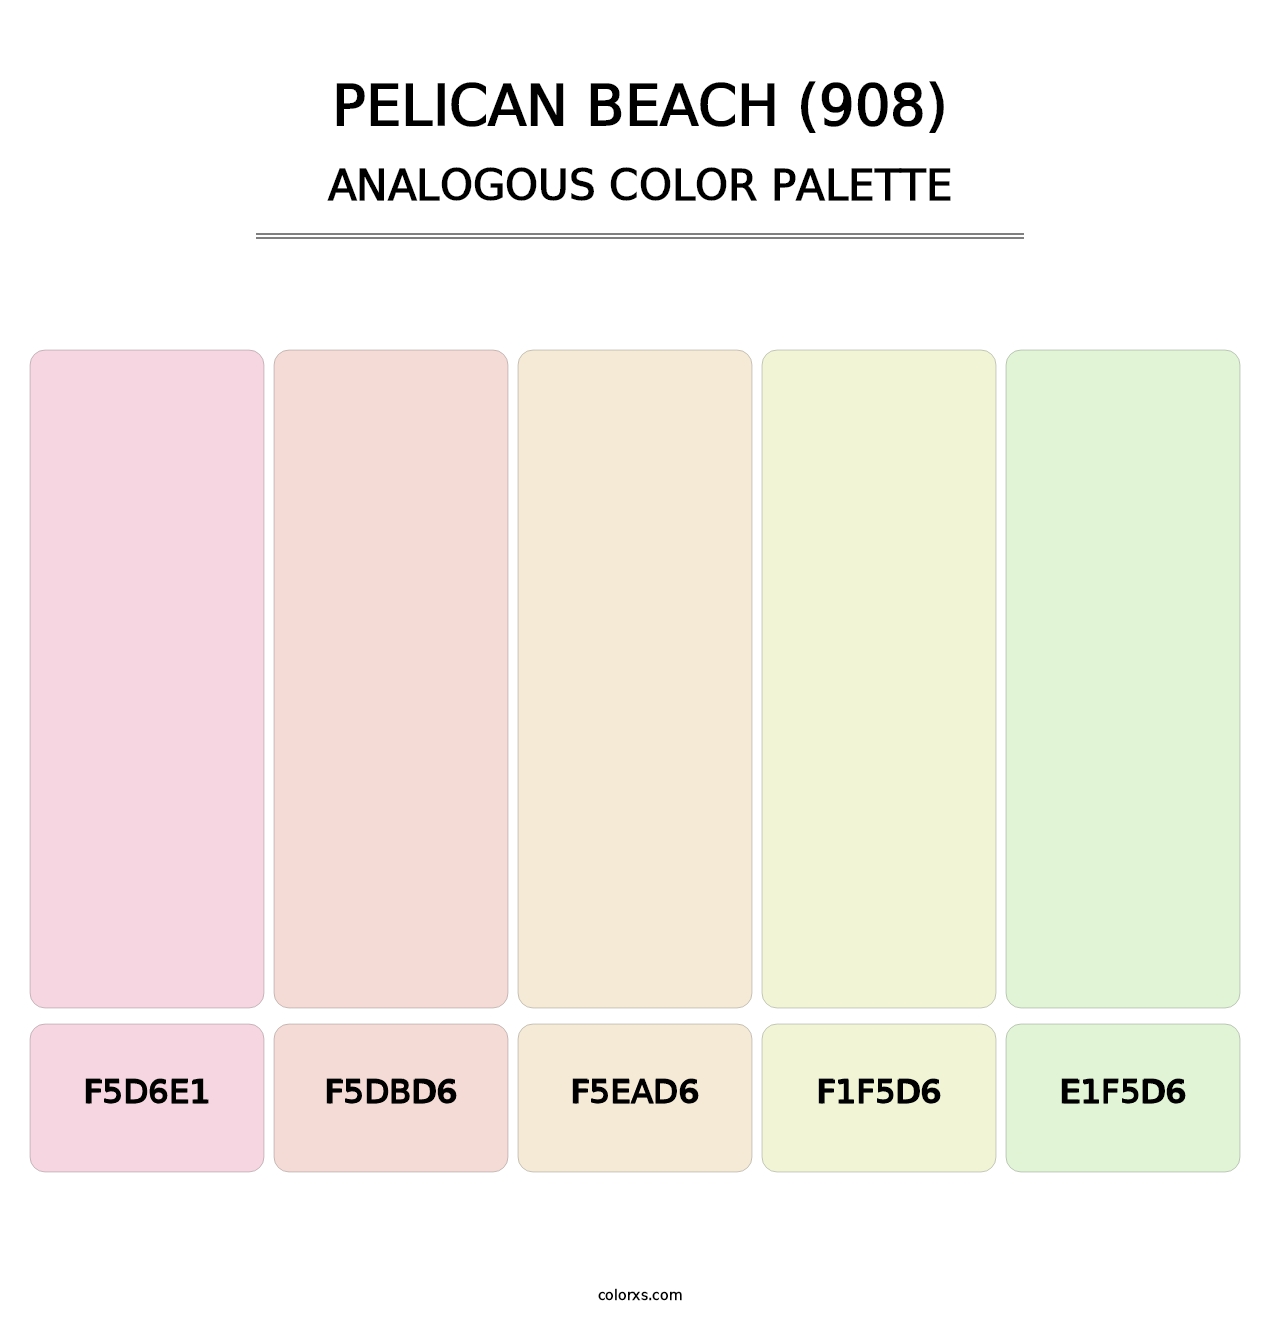 Pelican Beach (908) - Analogous Color Palette